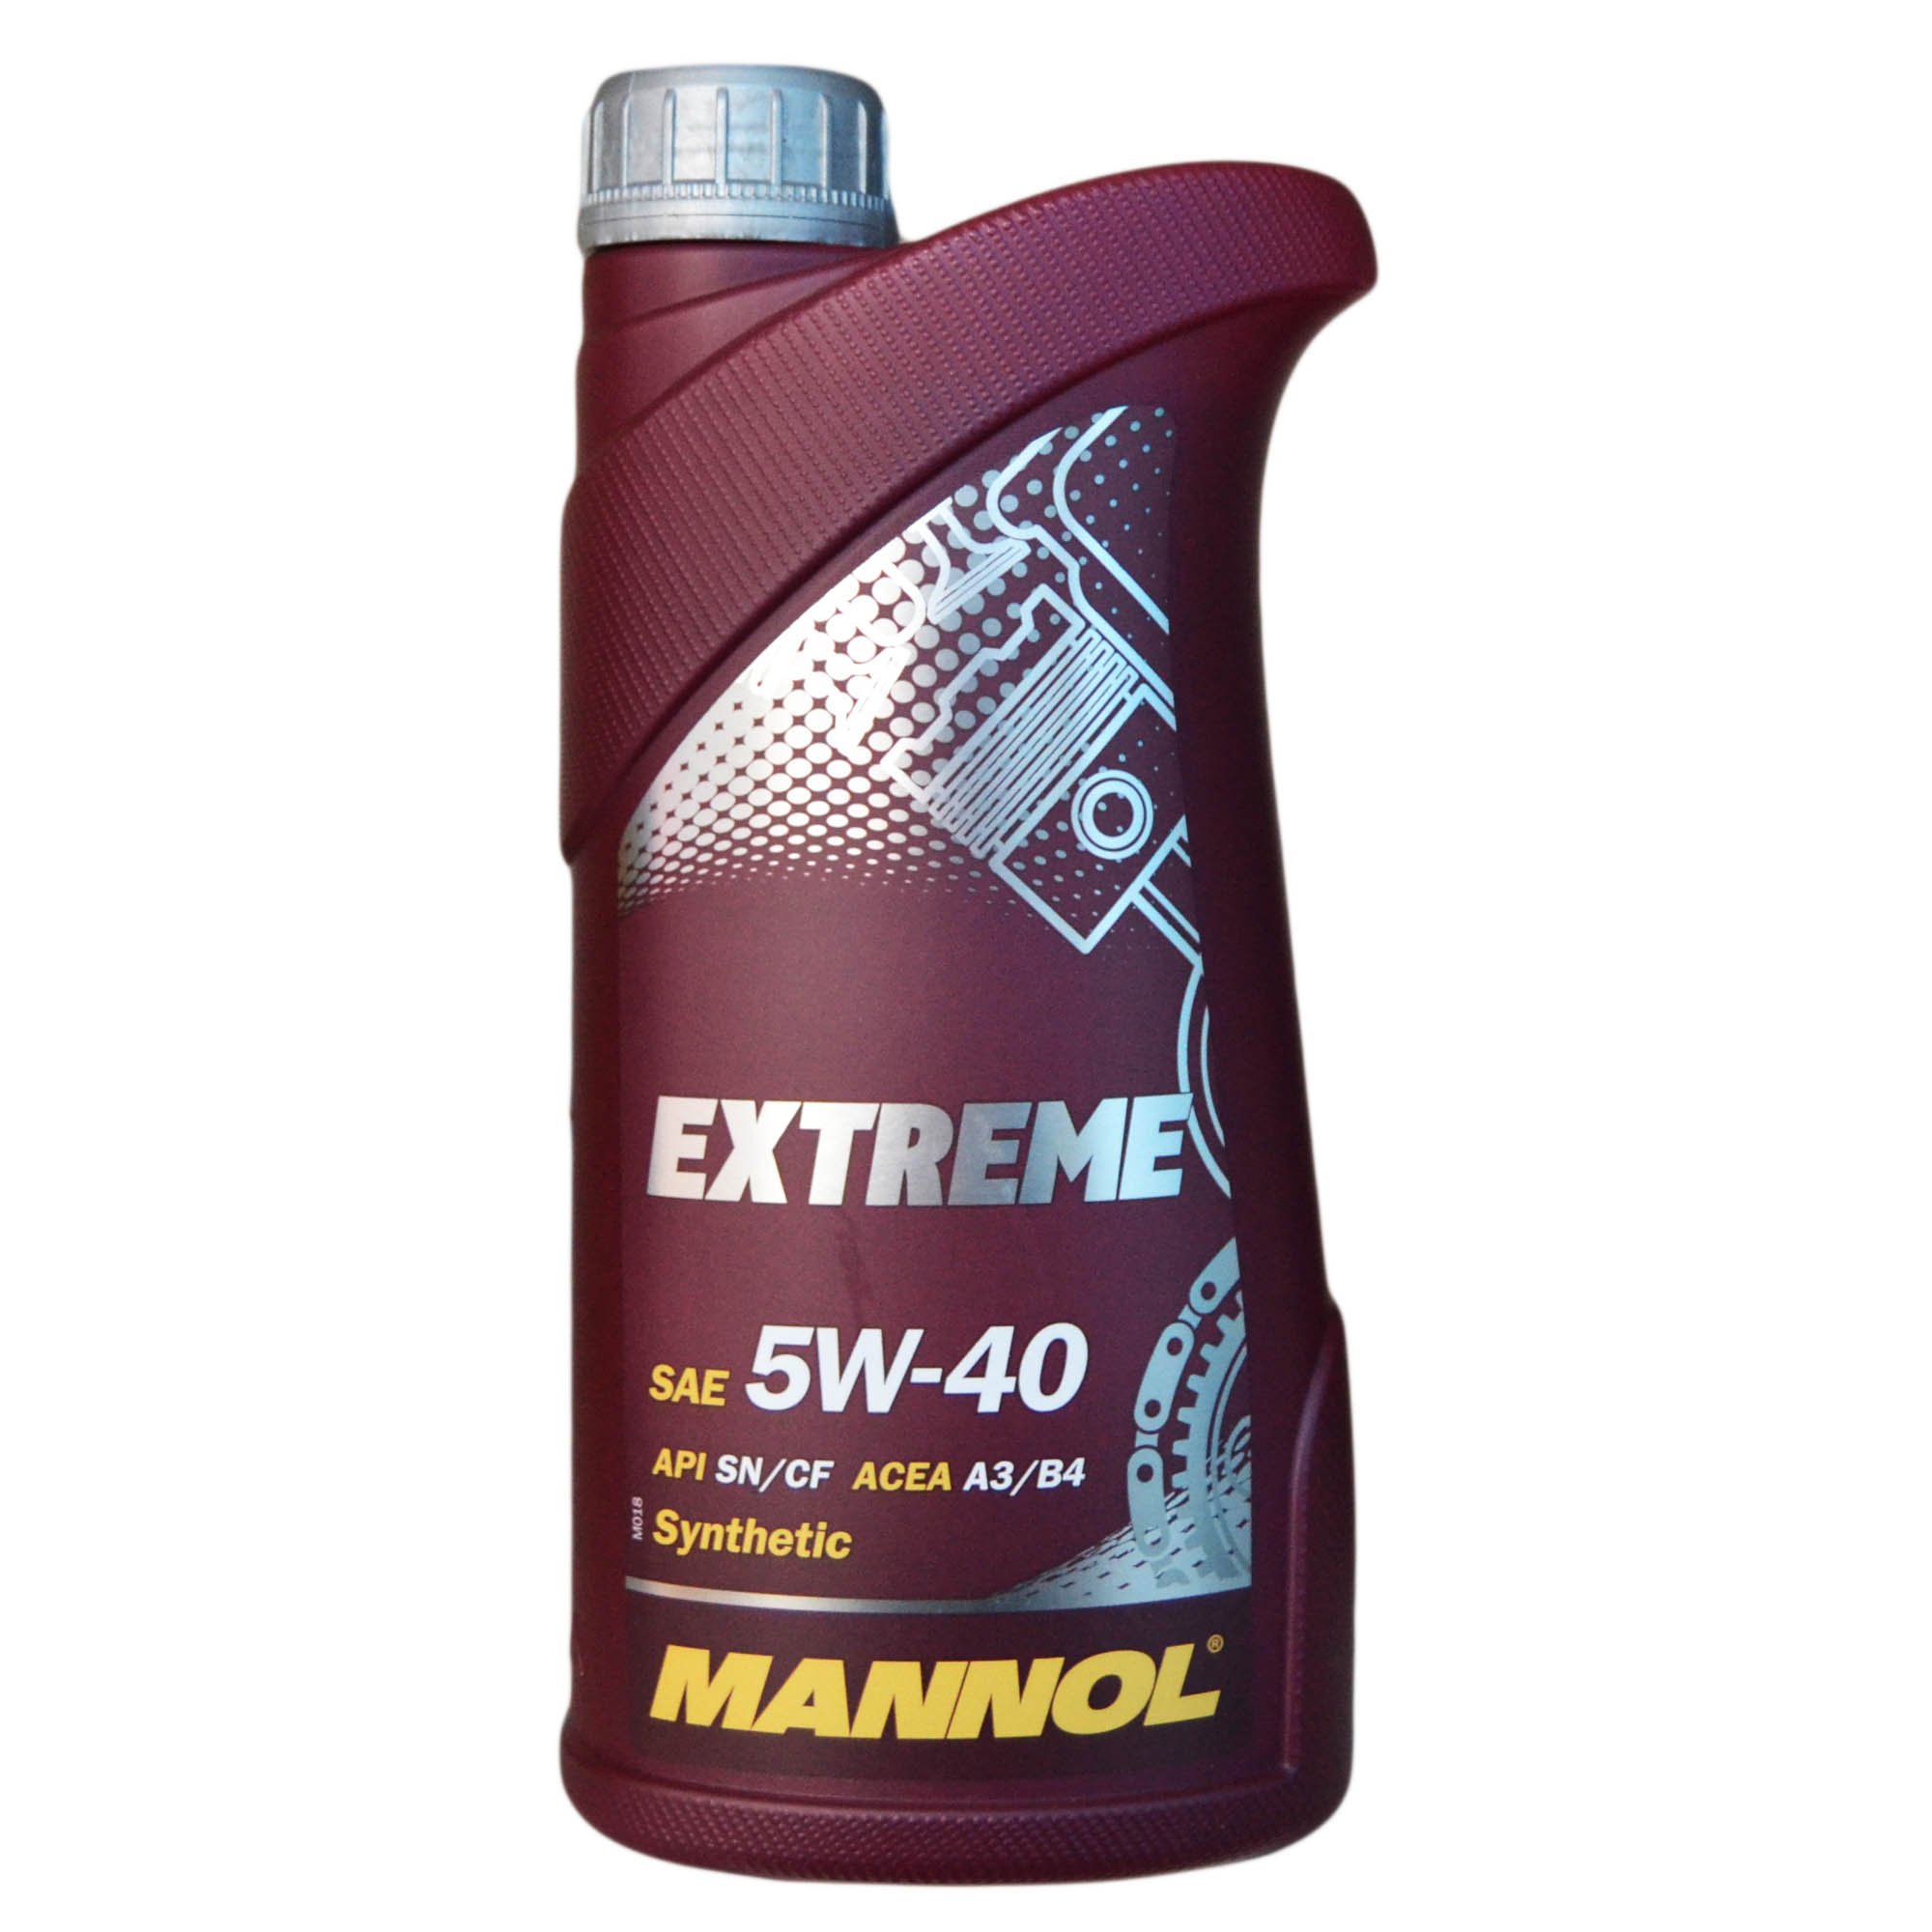 Масло в гур атф. Mannol extreme 5w-40. 8102 Mannol MAXPOWER 4x4 75w140 1 л. синтетическое трансмиссионное масло 75w-140. 75w140 Mannol артикул 4л. Трансмиссионное Mannol "MAXPOWER 4x4", 75w-140.